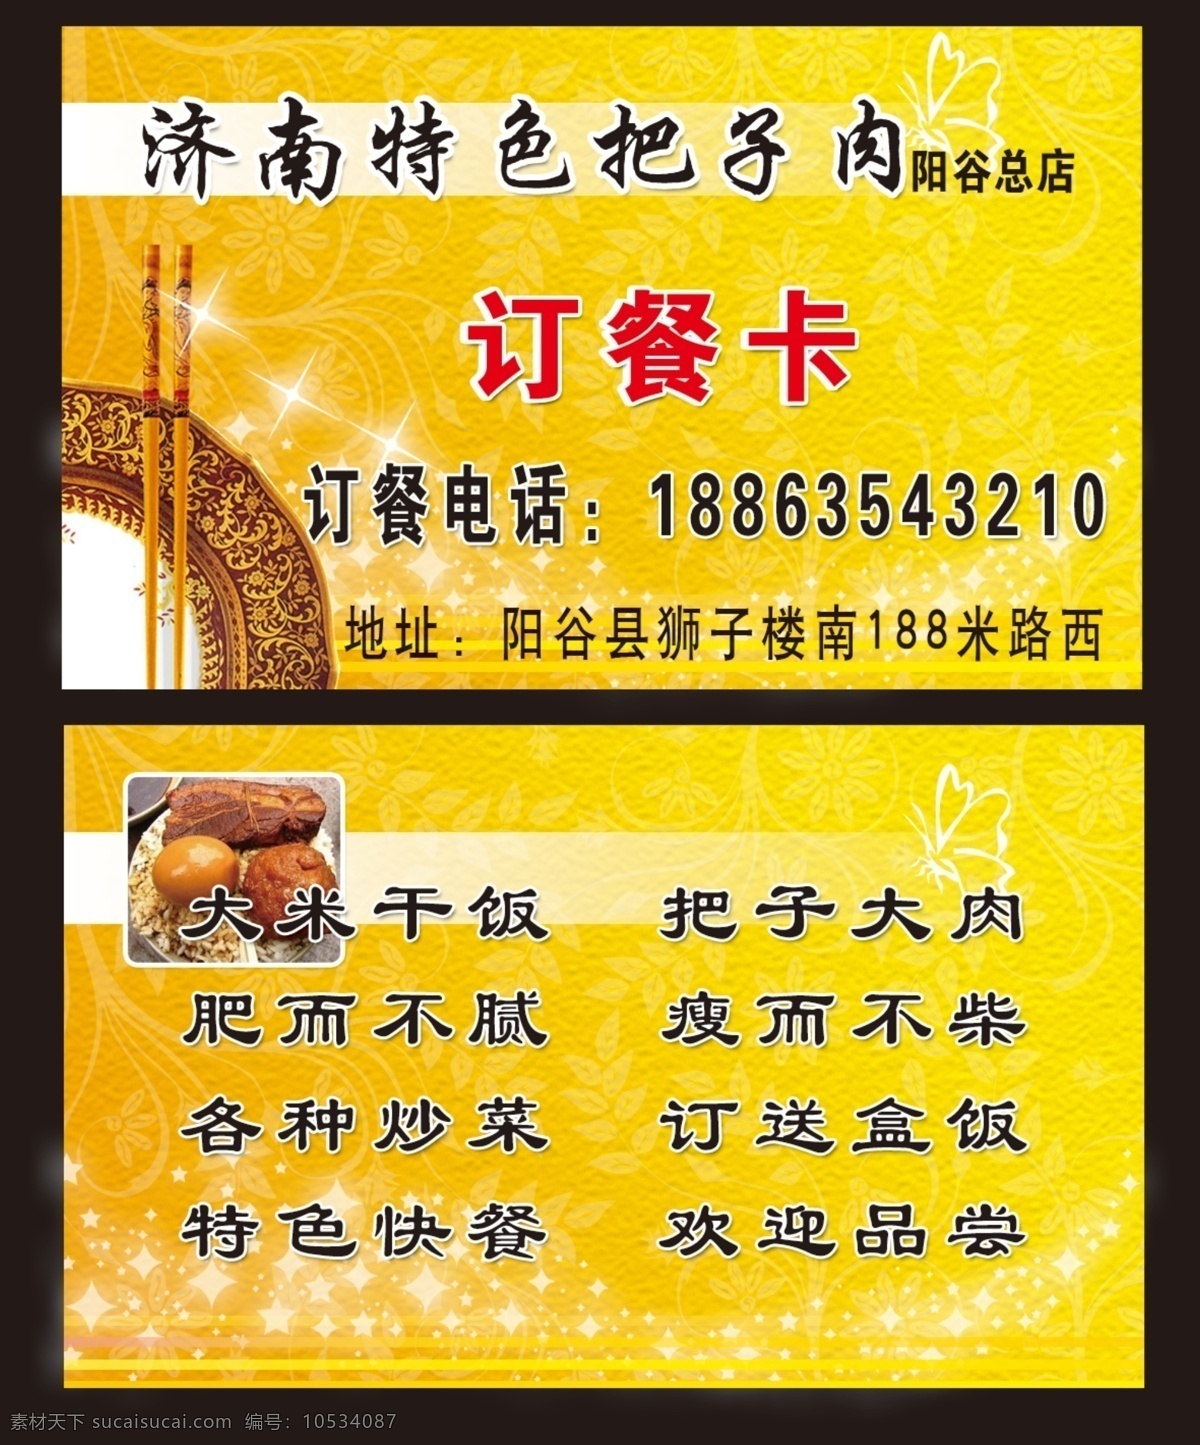 酒店订餐卡 把子肉 餐饮 黄色背景 筷子 盘子 名片卡片 广告设计模板 源文件